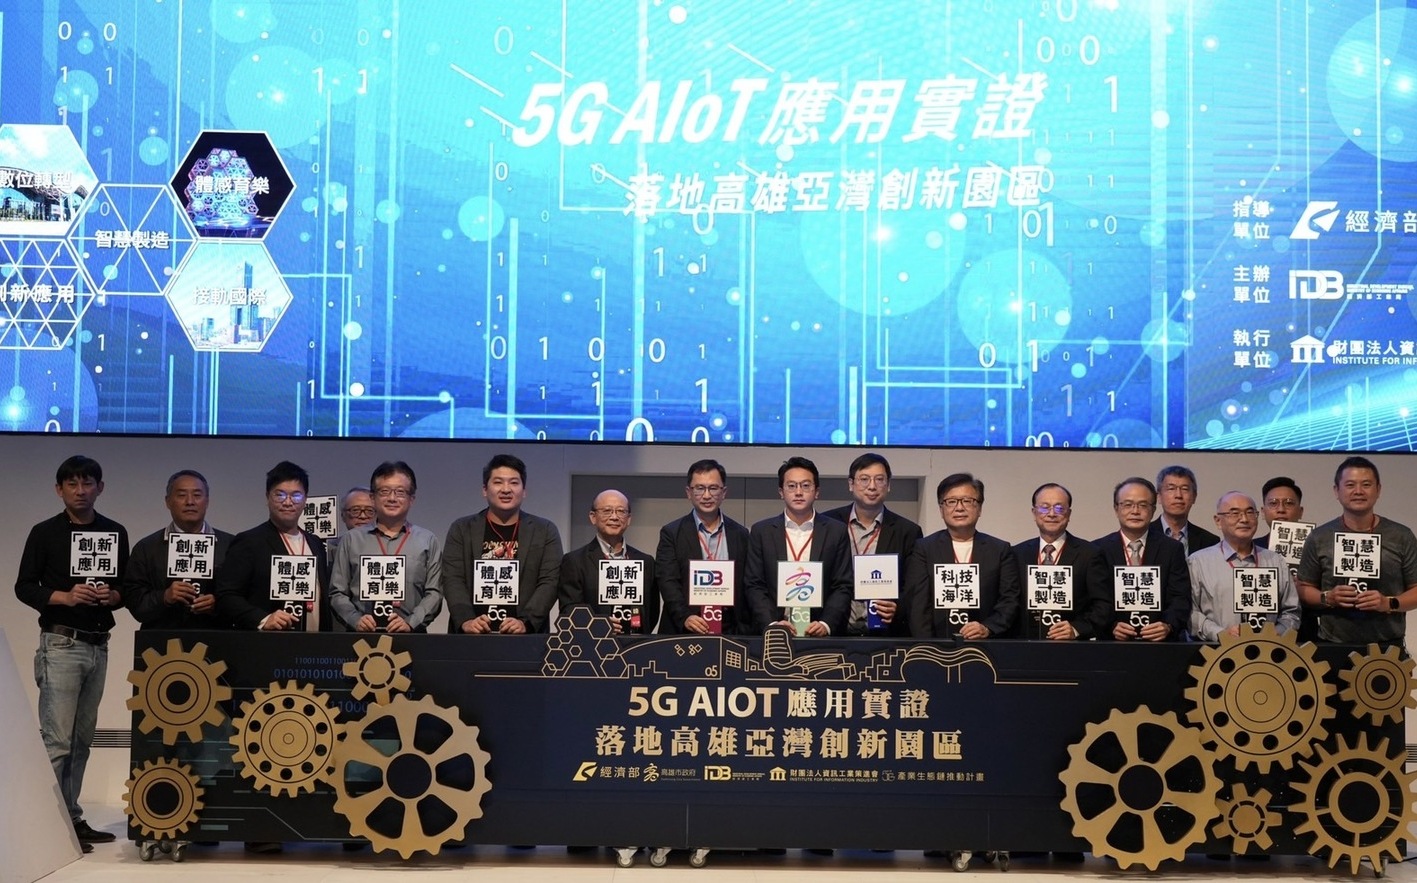 經濟部打造產業生態鏈 高雄亞灣提前體現5G AIoT未來 | 科技 |